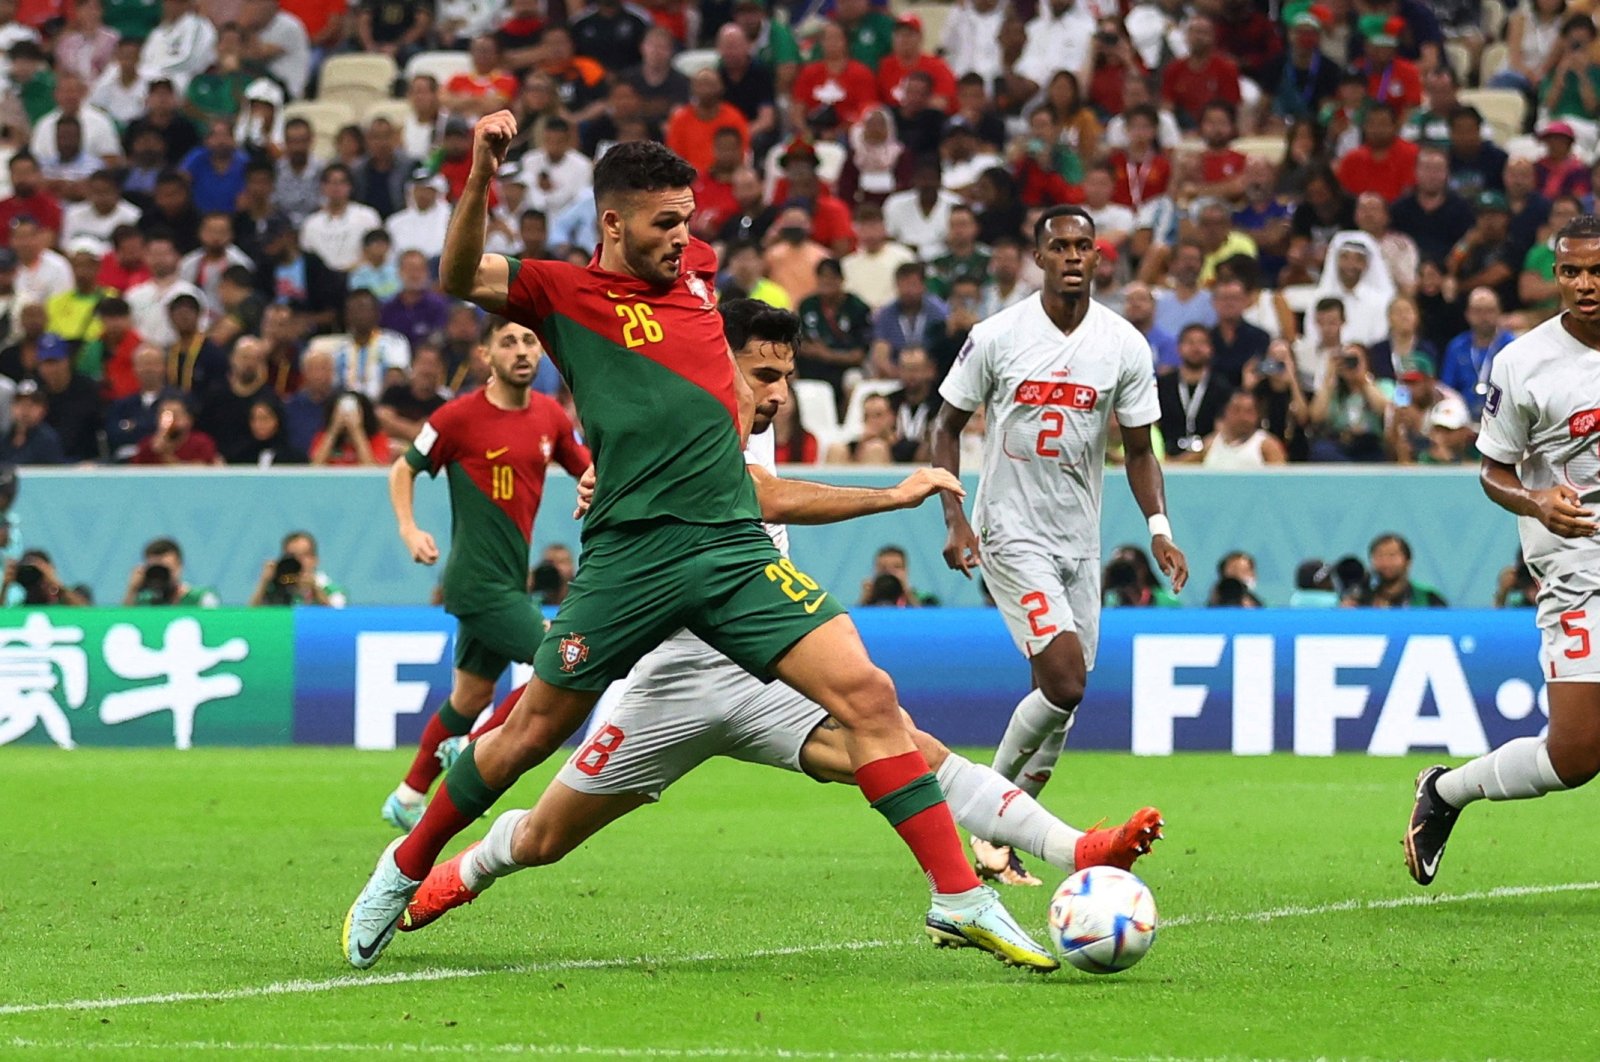 Pahlawan hattrick Ramos yang tidak mungkin mengirim Portugal ke perempat final